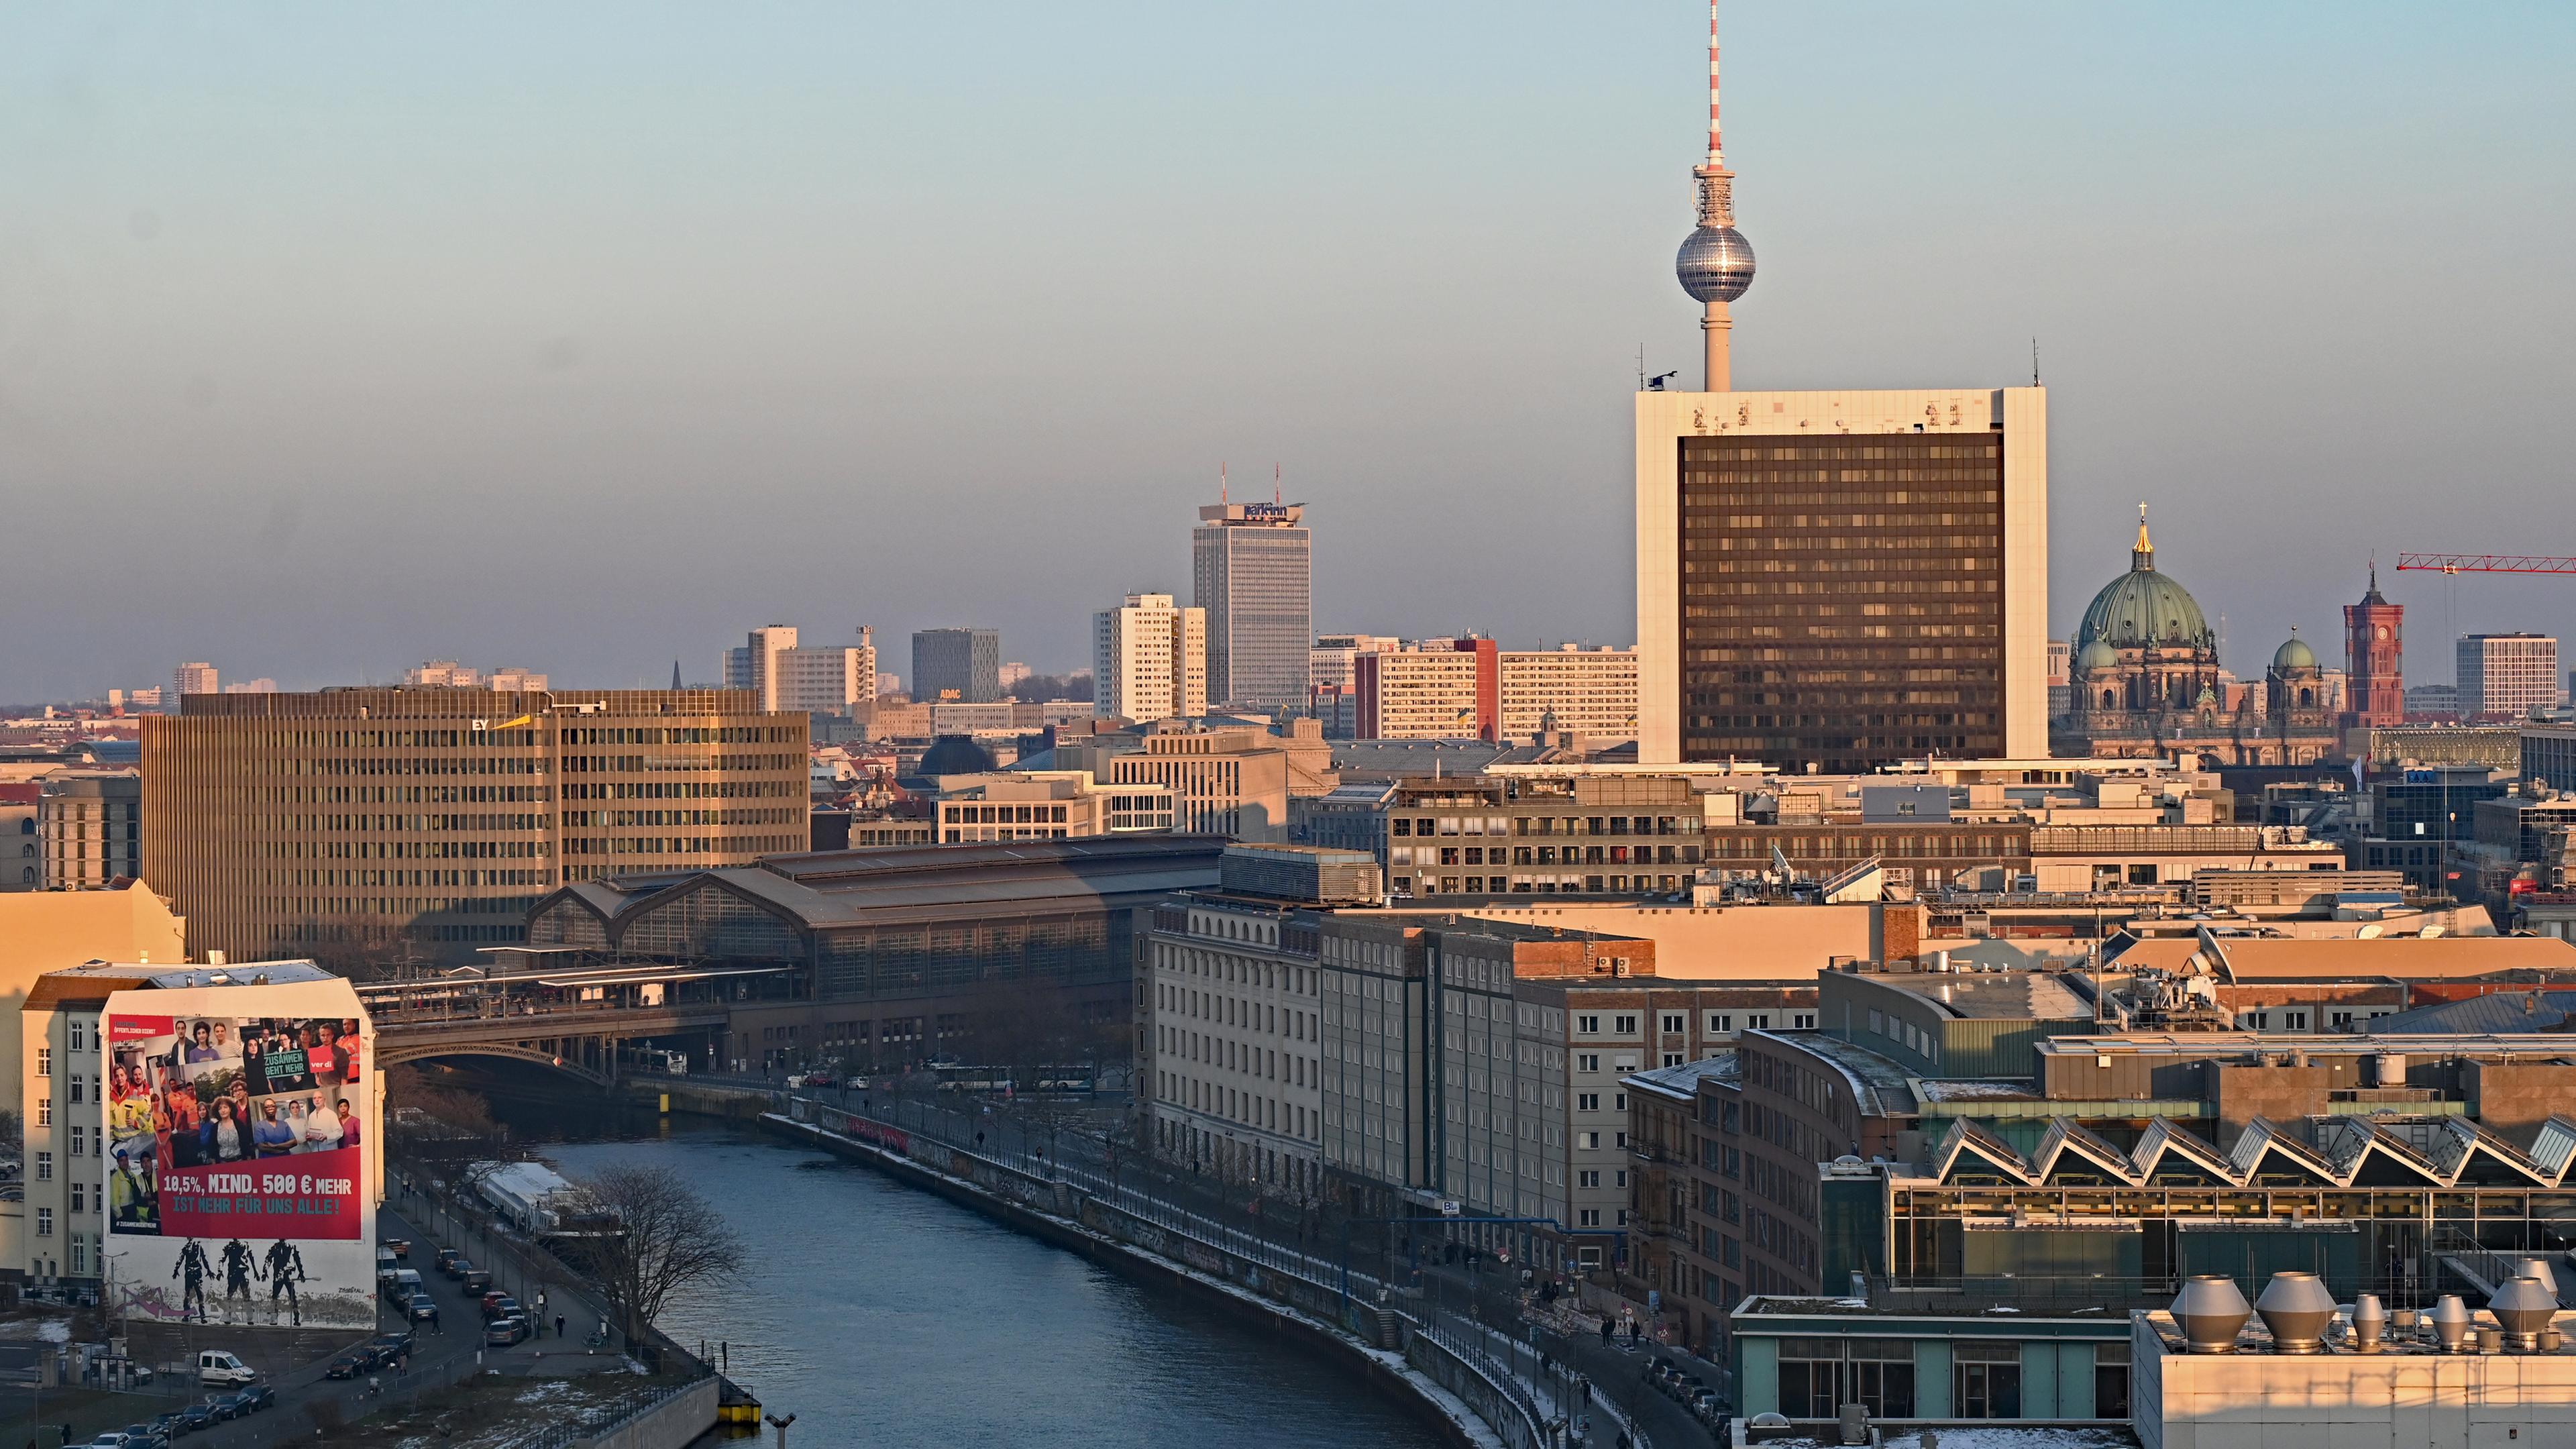 Berlin: Blick auf den Fernsehturm, dem Berliner Dom und das Rote Rathaus bei untergehender Sonne von der Kuppel des Reichstagsgebäudes.